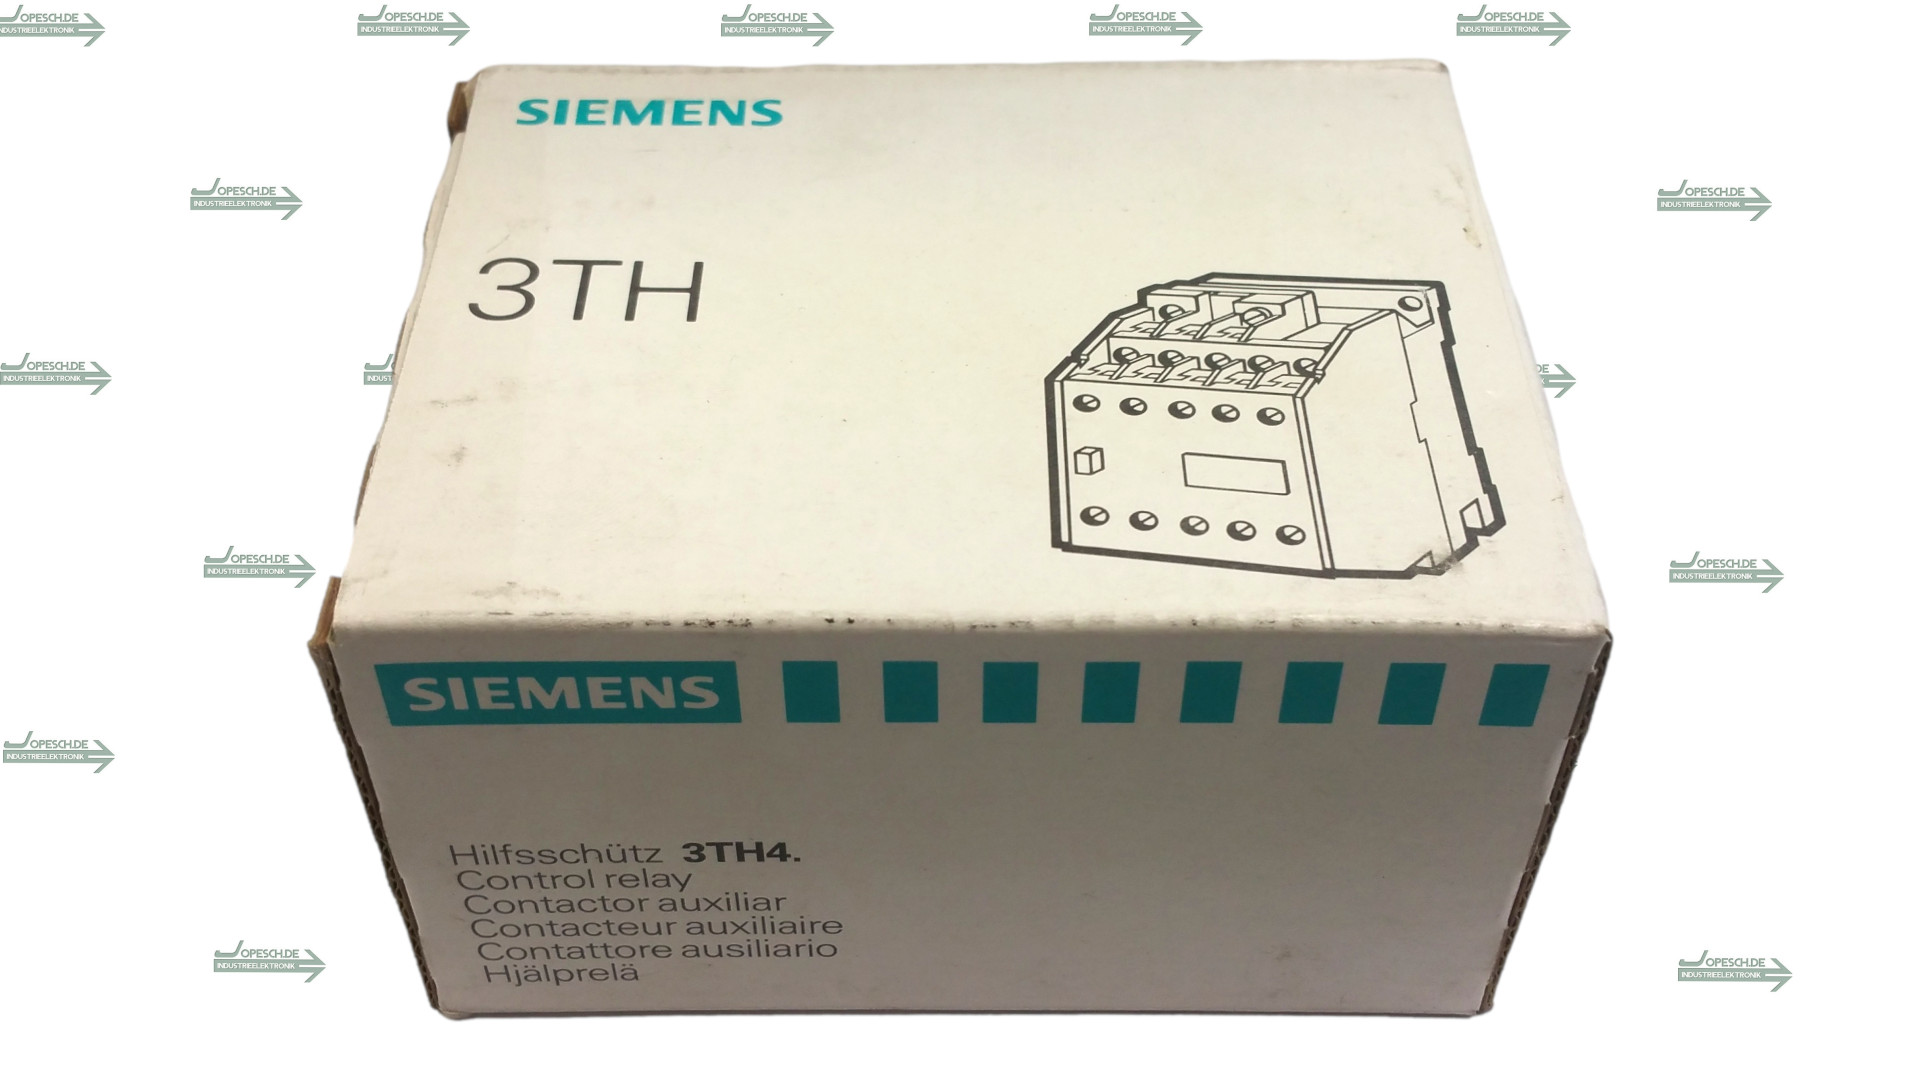 Siemens Hilfsschütz Control relay 3TH43 44-0AD0 ( 3TH4344-0AD0 )